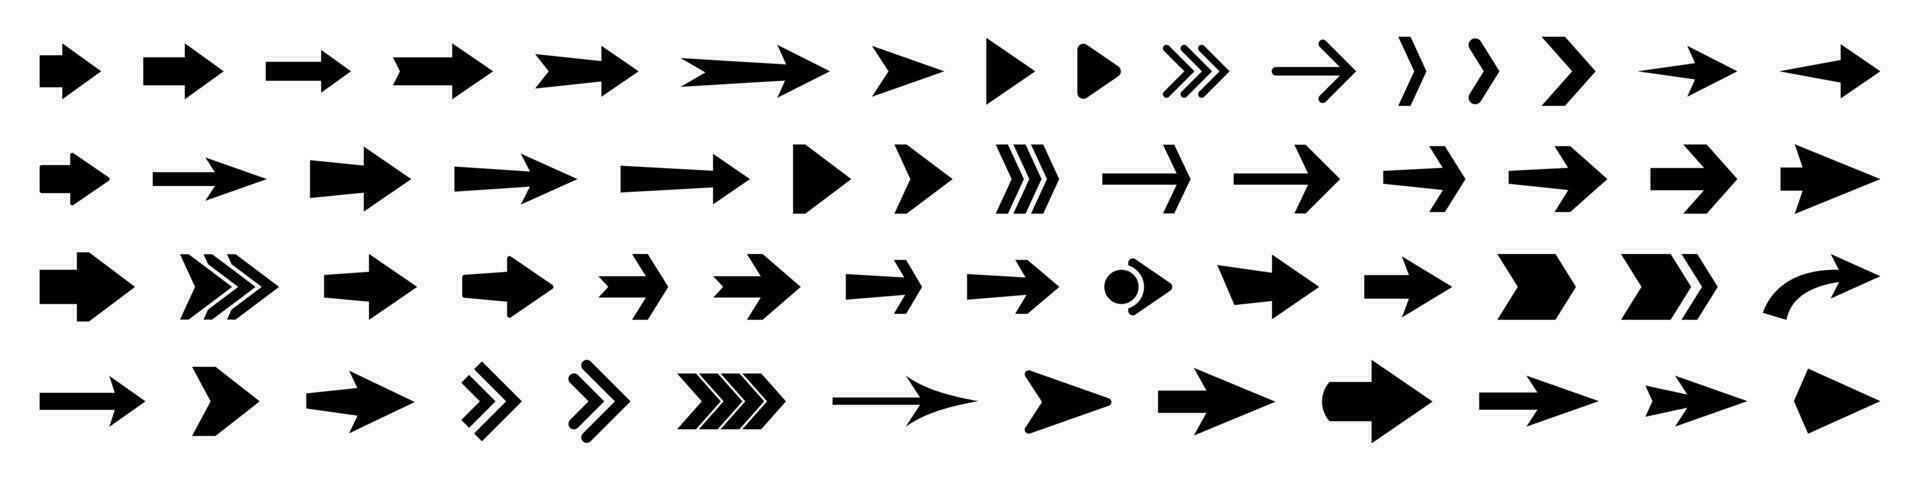 conjunto de vector flecha iconos colección de punteros